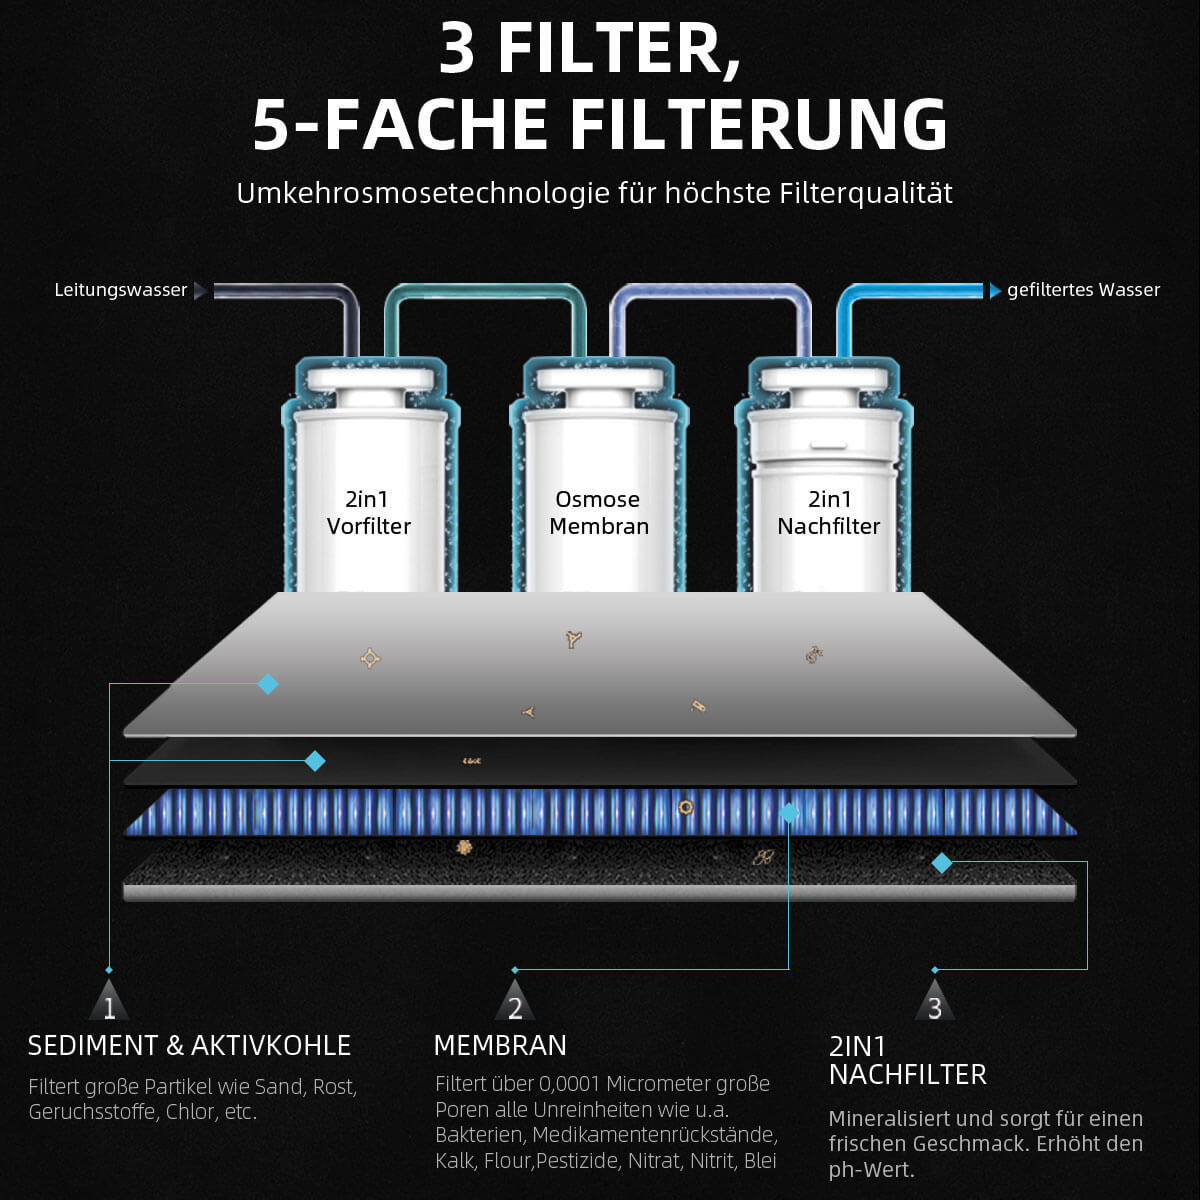 5 fache Filterung in 3 Filtern